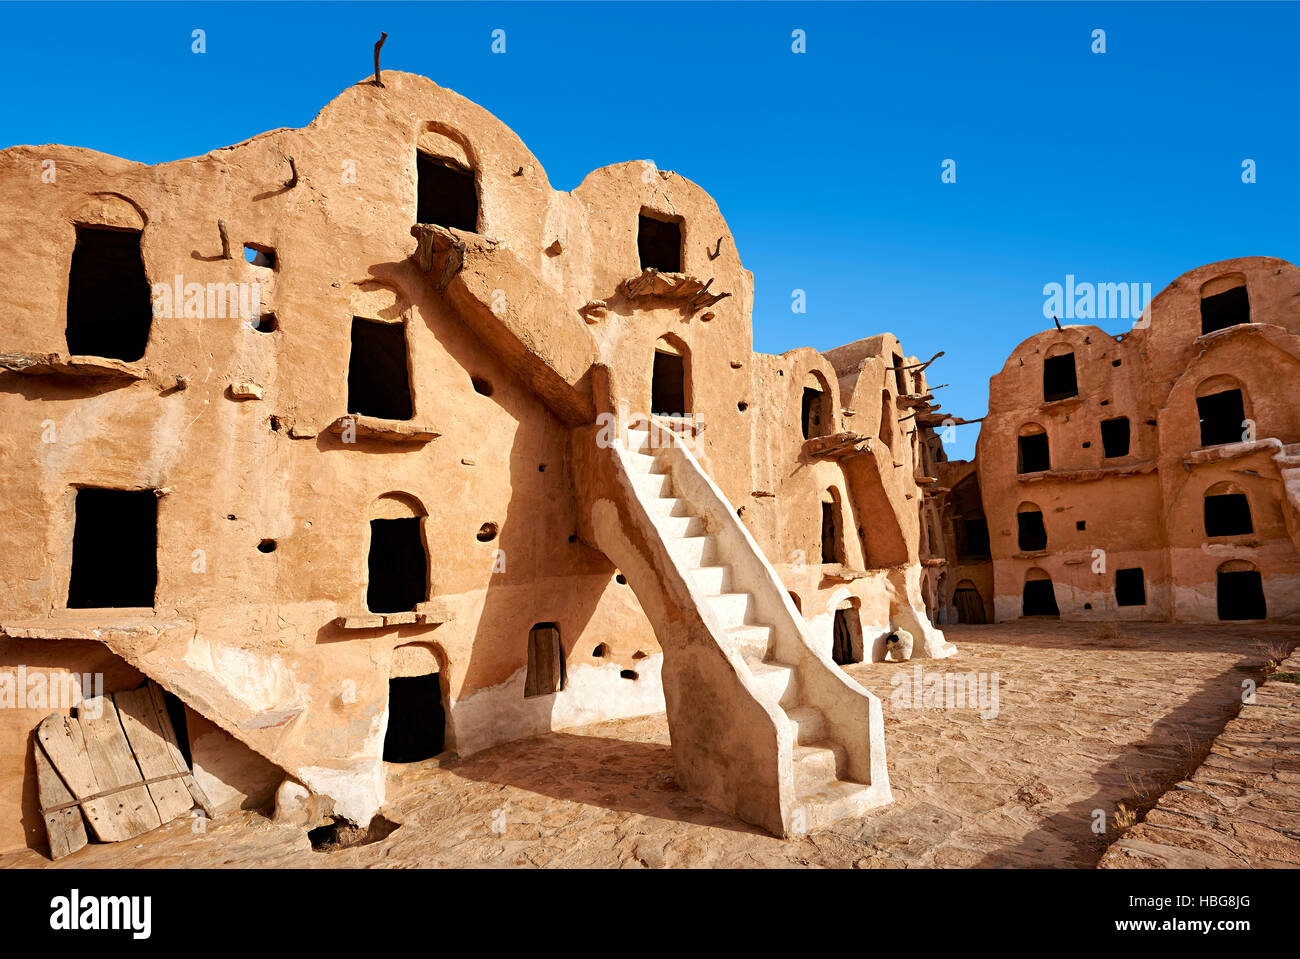 El Ksar ouled soltane, granero fortificado cerca de tataouine, del Sahara septentrional, Túnez Foto de stock